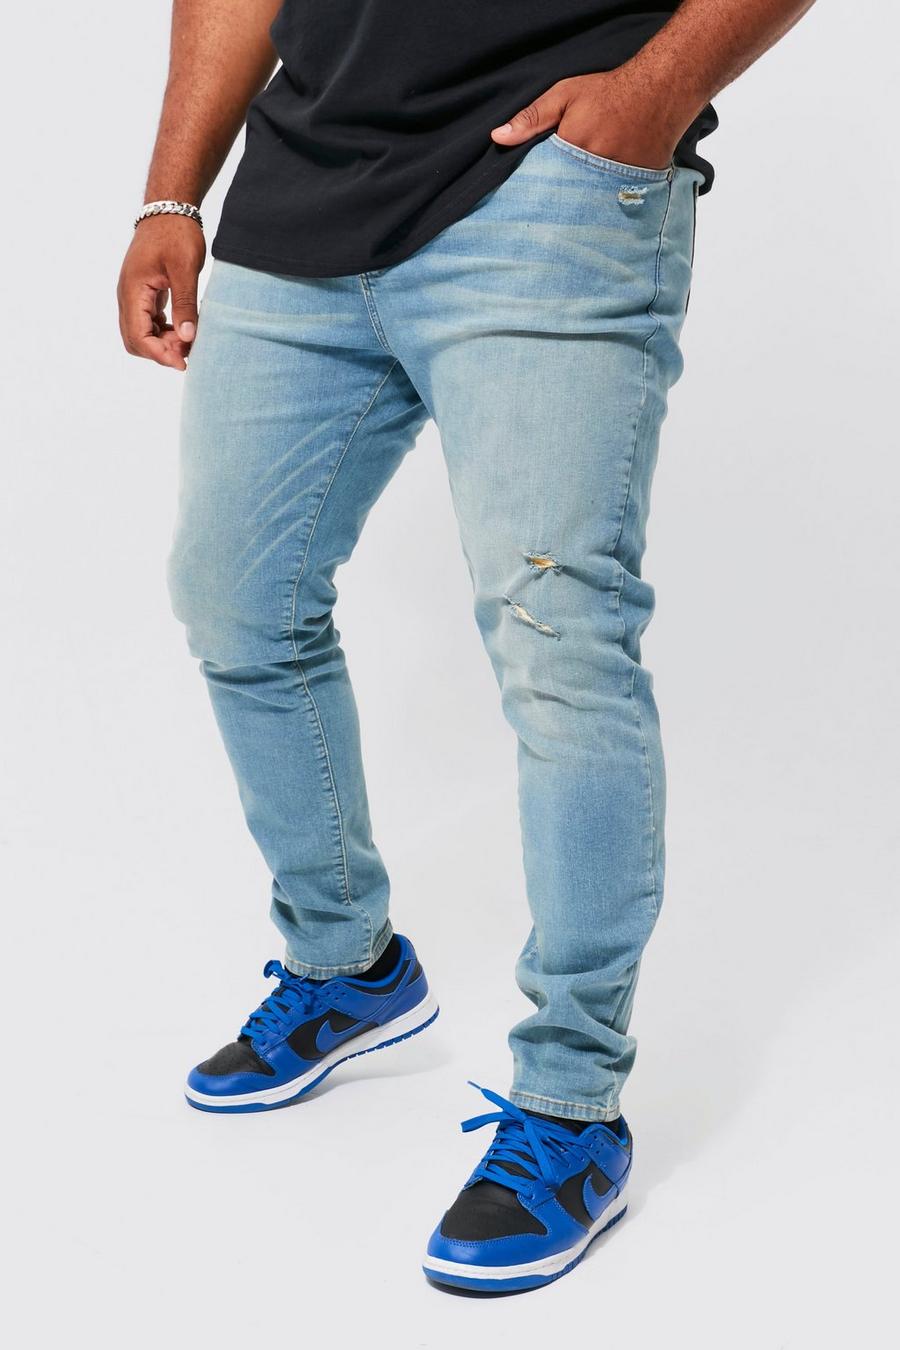 Jeans Plus Size Skinny Fit Stretch con strappi sul ginocchio, Antique wash azzurro